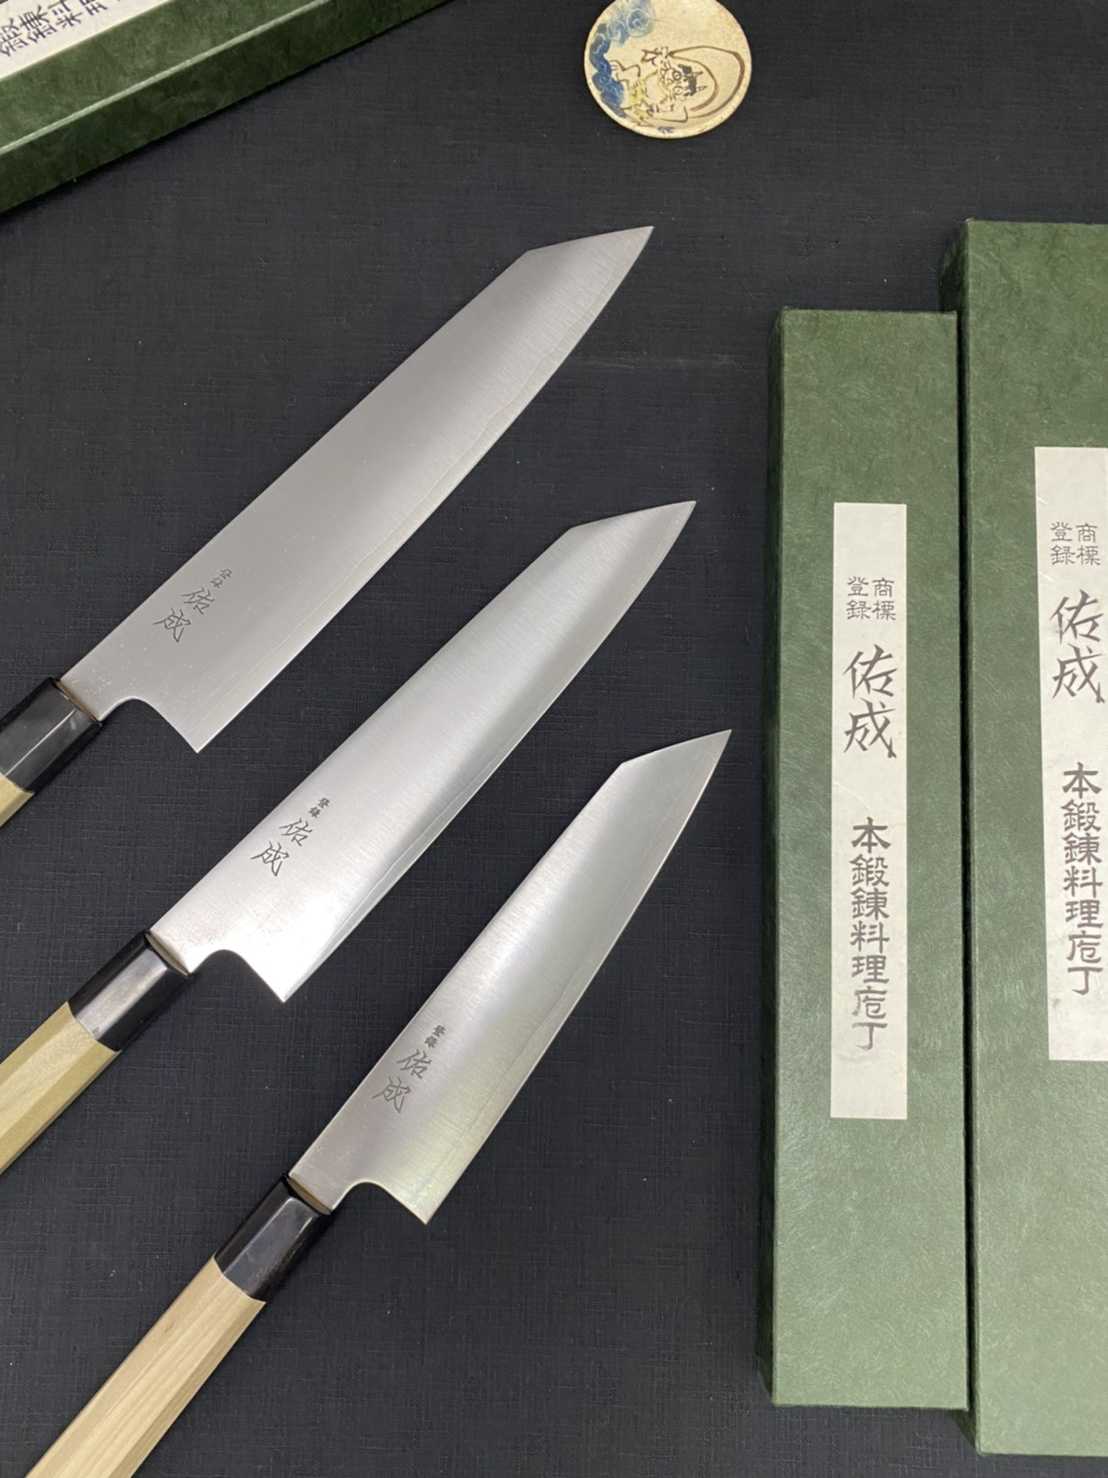 💖現貨💖 佑成【 SG-2 粉末鋼 (抗鏽) 劍形和牛刀 27cm 】日本製 廚房刀具 八煌刃物